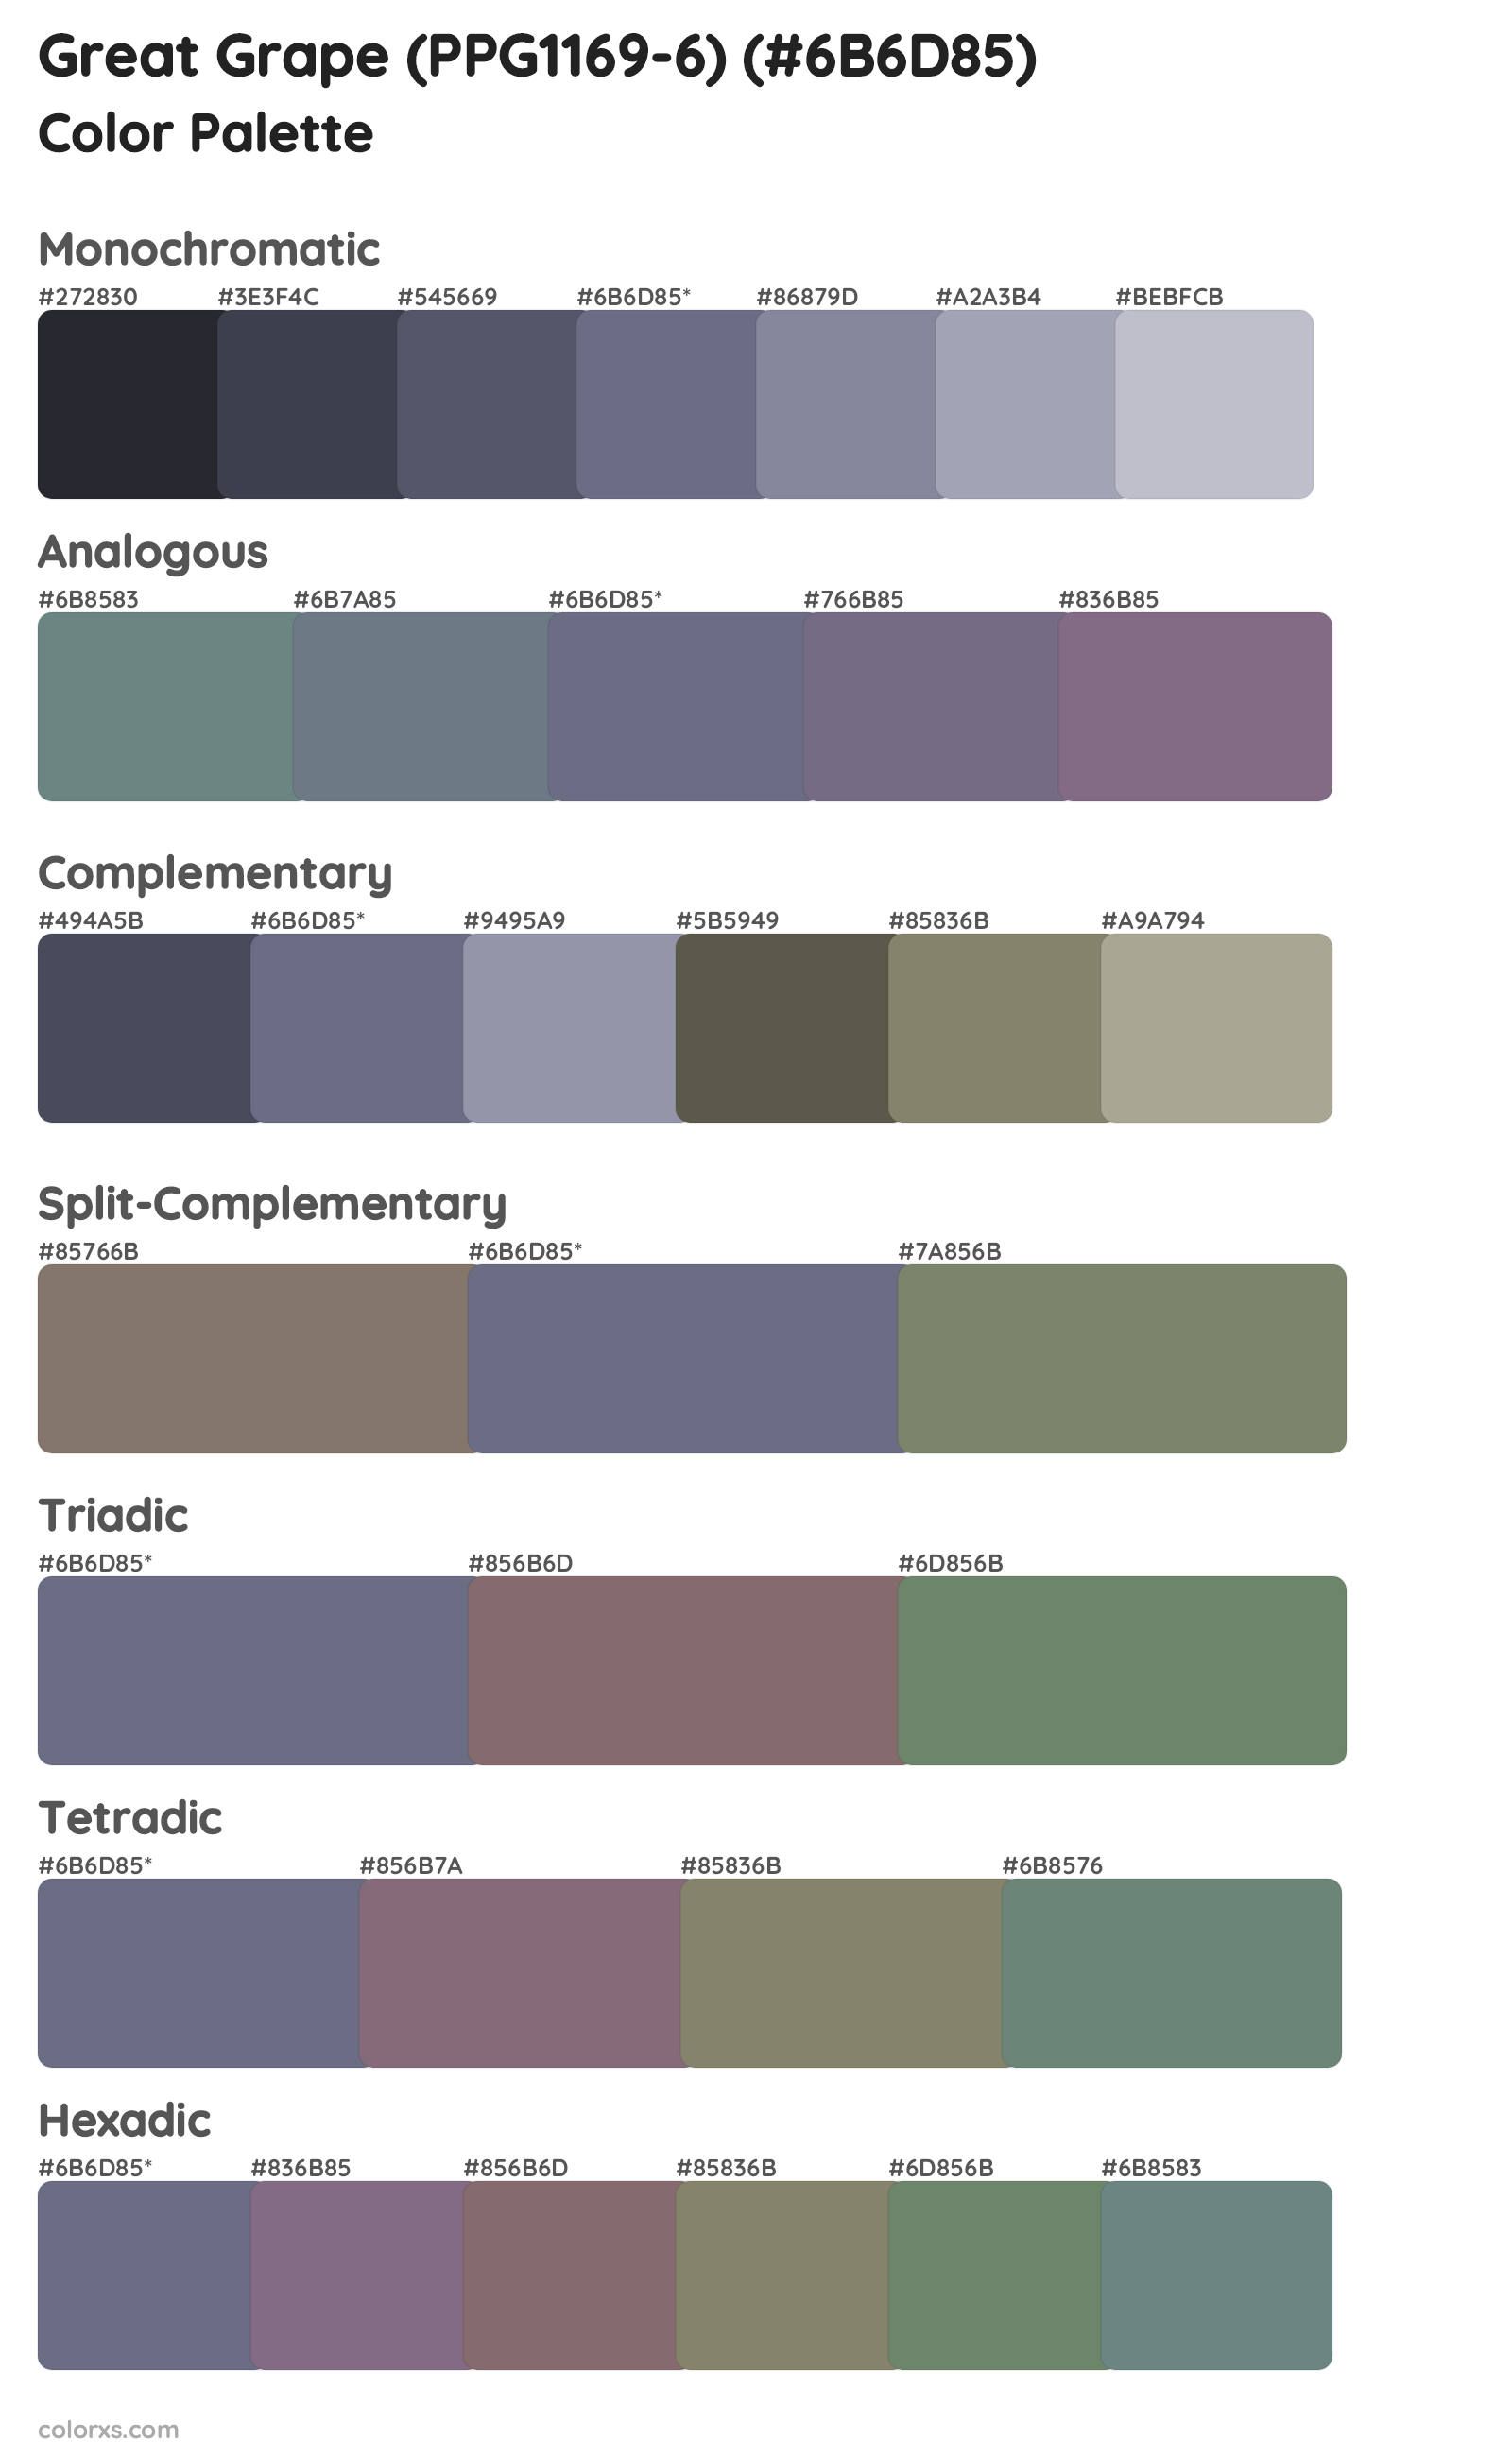 Great Grape (PPG1169-6) Color Scheme Palettes